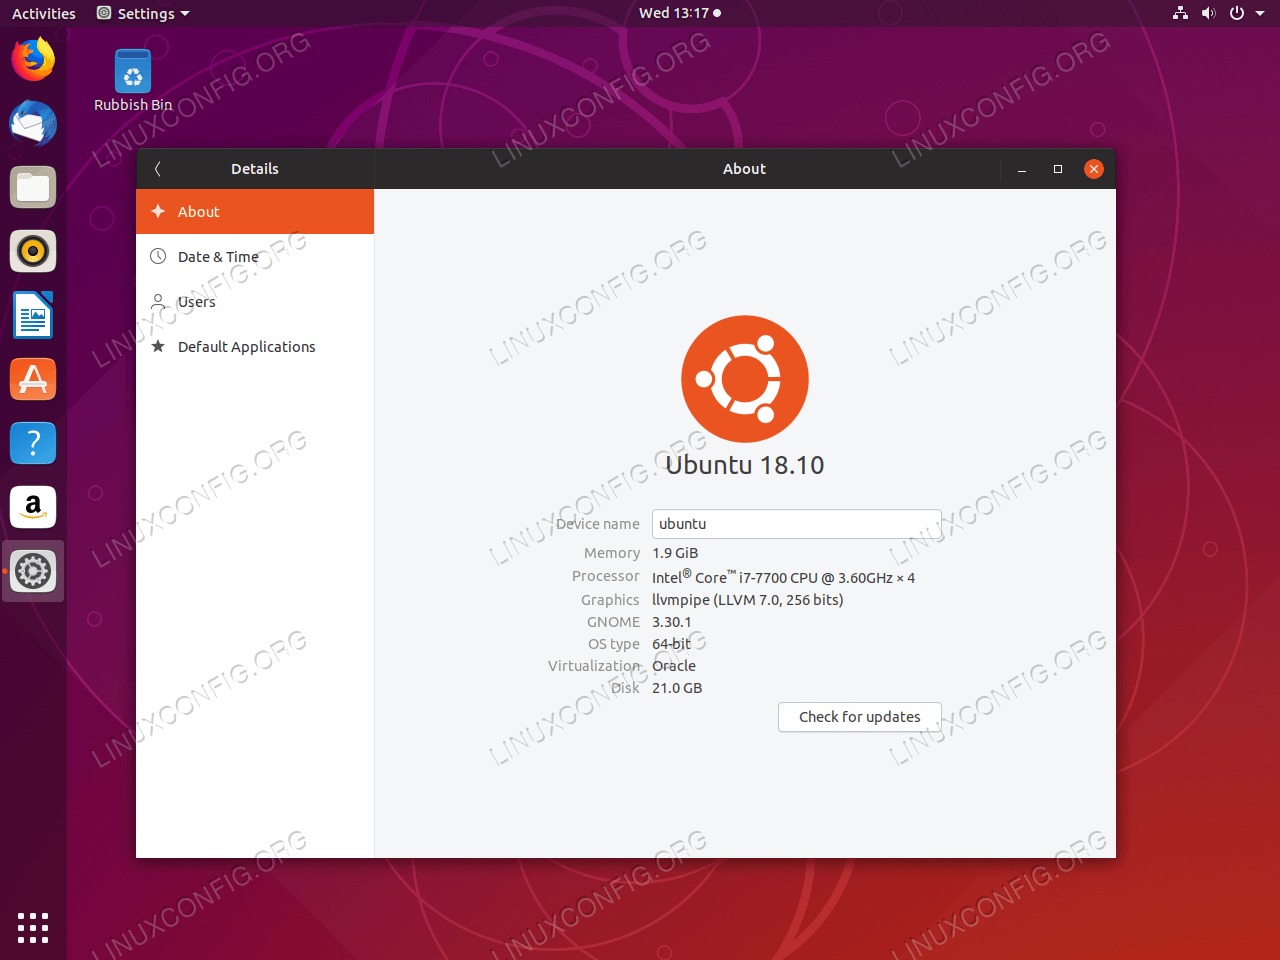 Your Ubuntu 18.04 is now upgraded to Ubuntu 18.10 Cosmic Cuttlefish